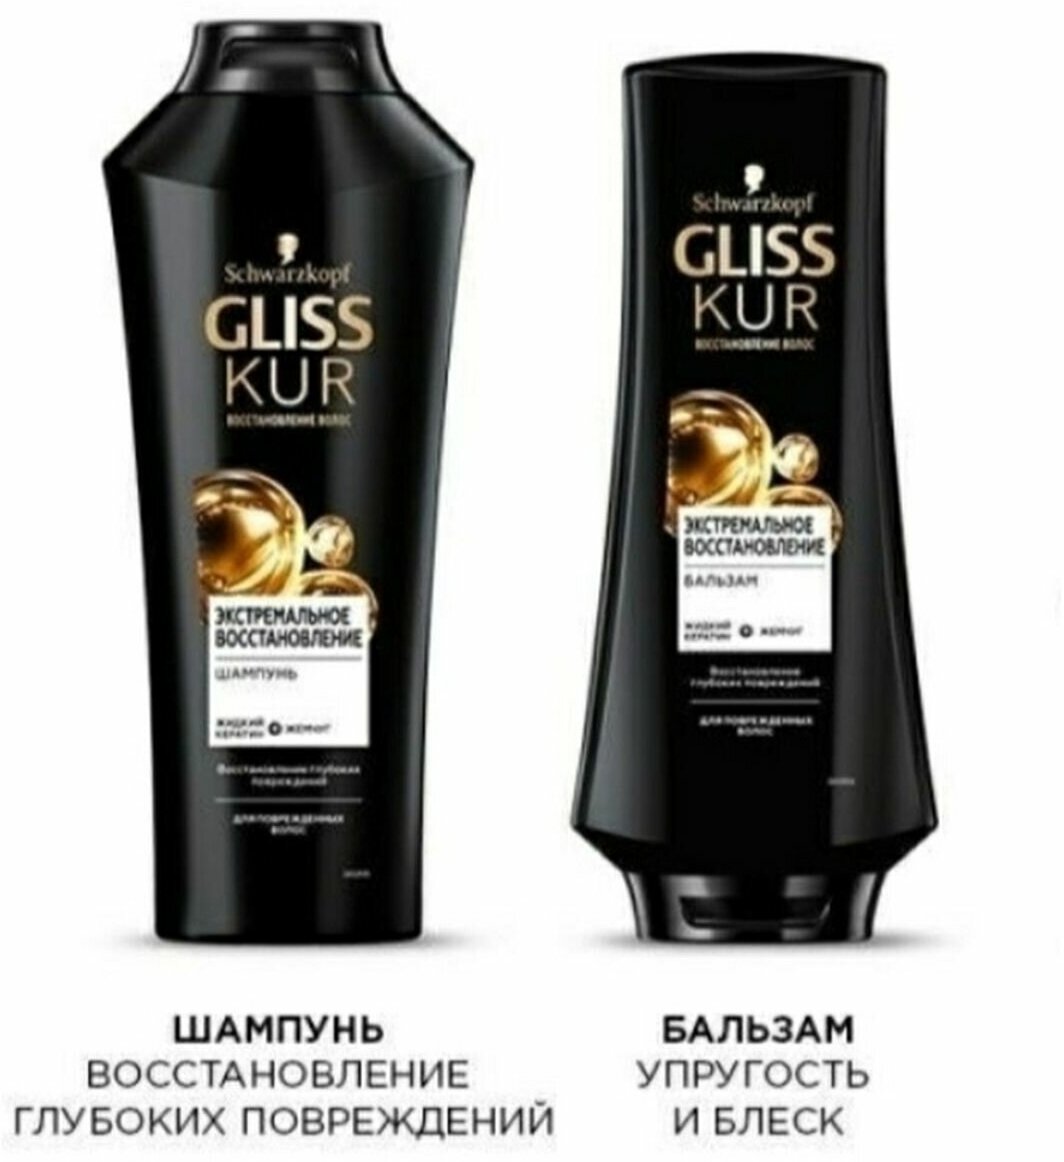 Gliss Kur/ Косметический набор для волос Gliss Kur Экстремальное восстановление/ Шампунь+Бальзам/ 400+360мл.